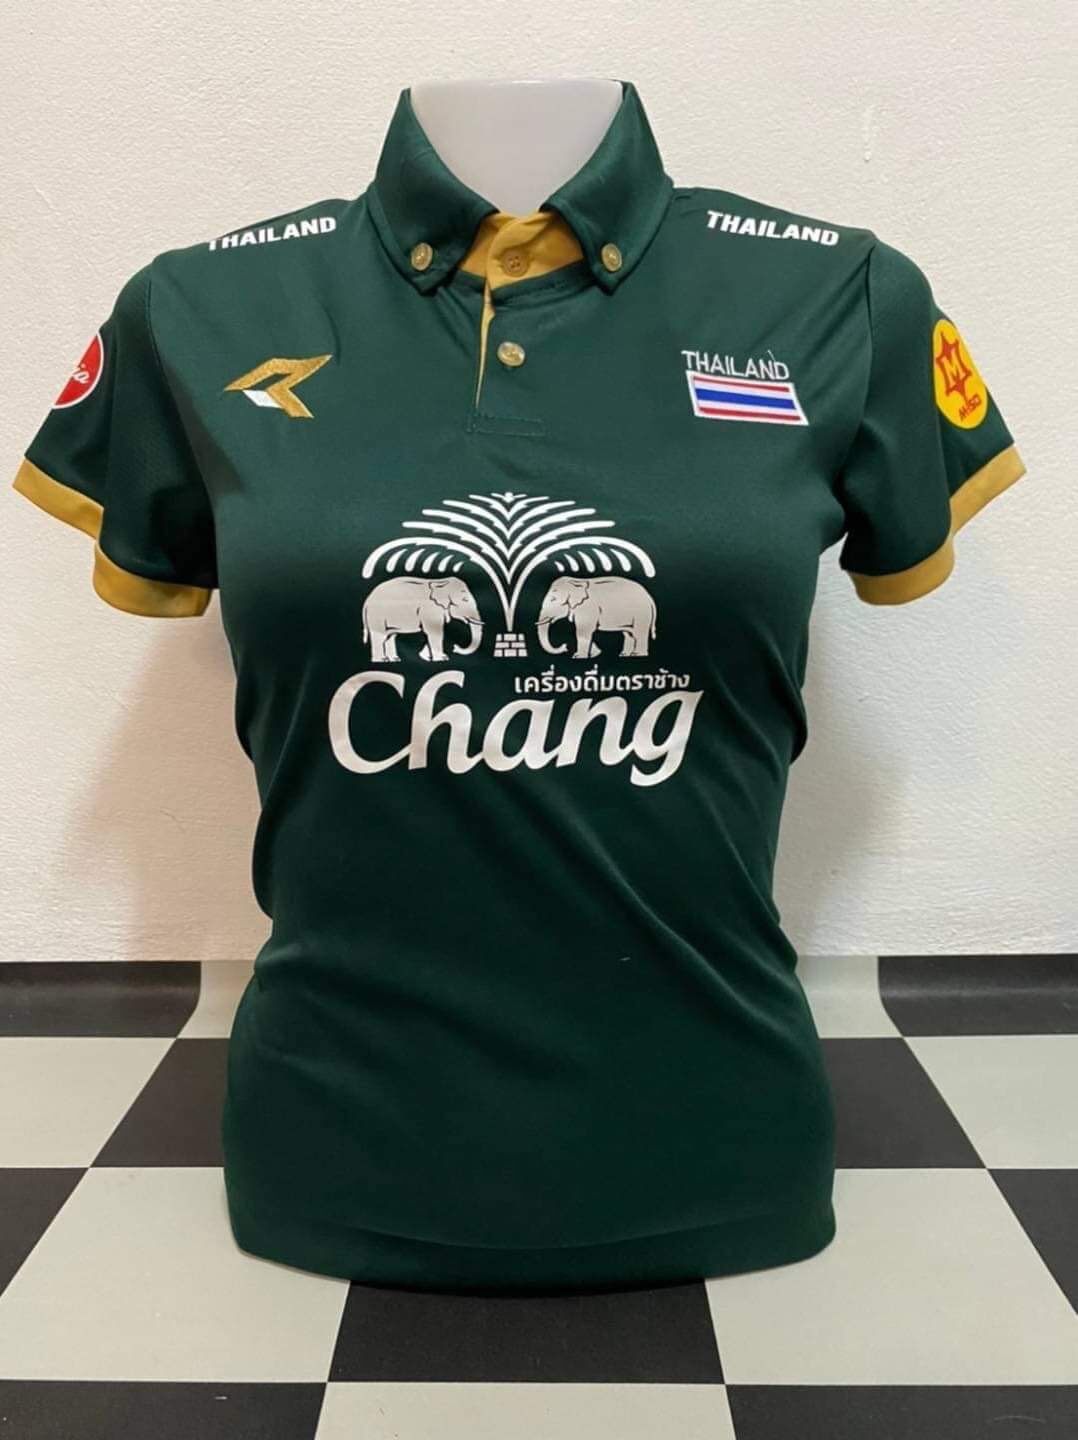 New เสื้อกีฬาหญิงทีมไทยแลนด์ คอปก สีเขียว ขนาดฟรีไซร์ อก32-38 ทรงเข้ารูป ยาว24.5